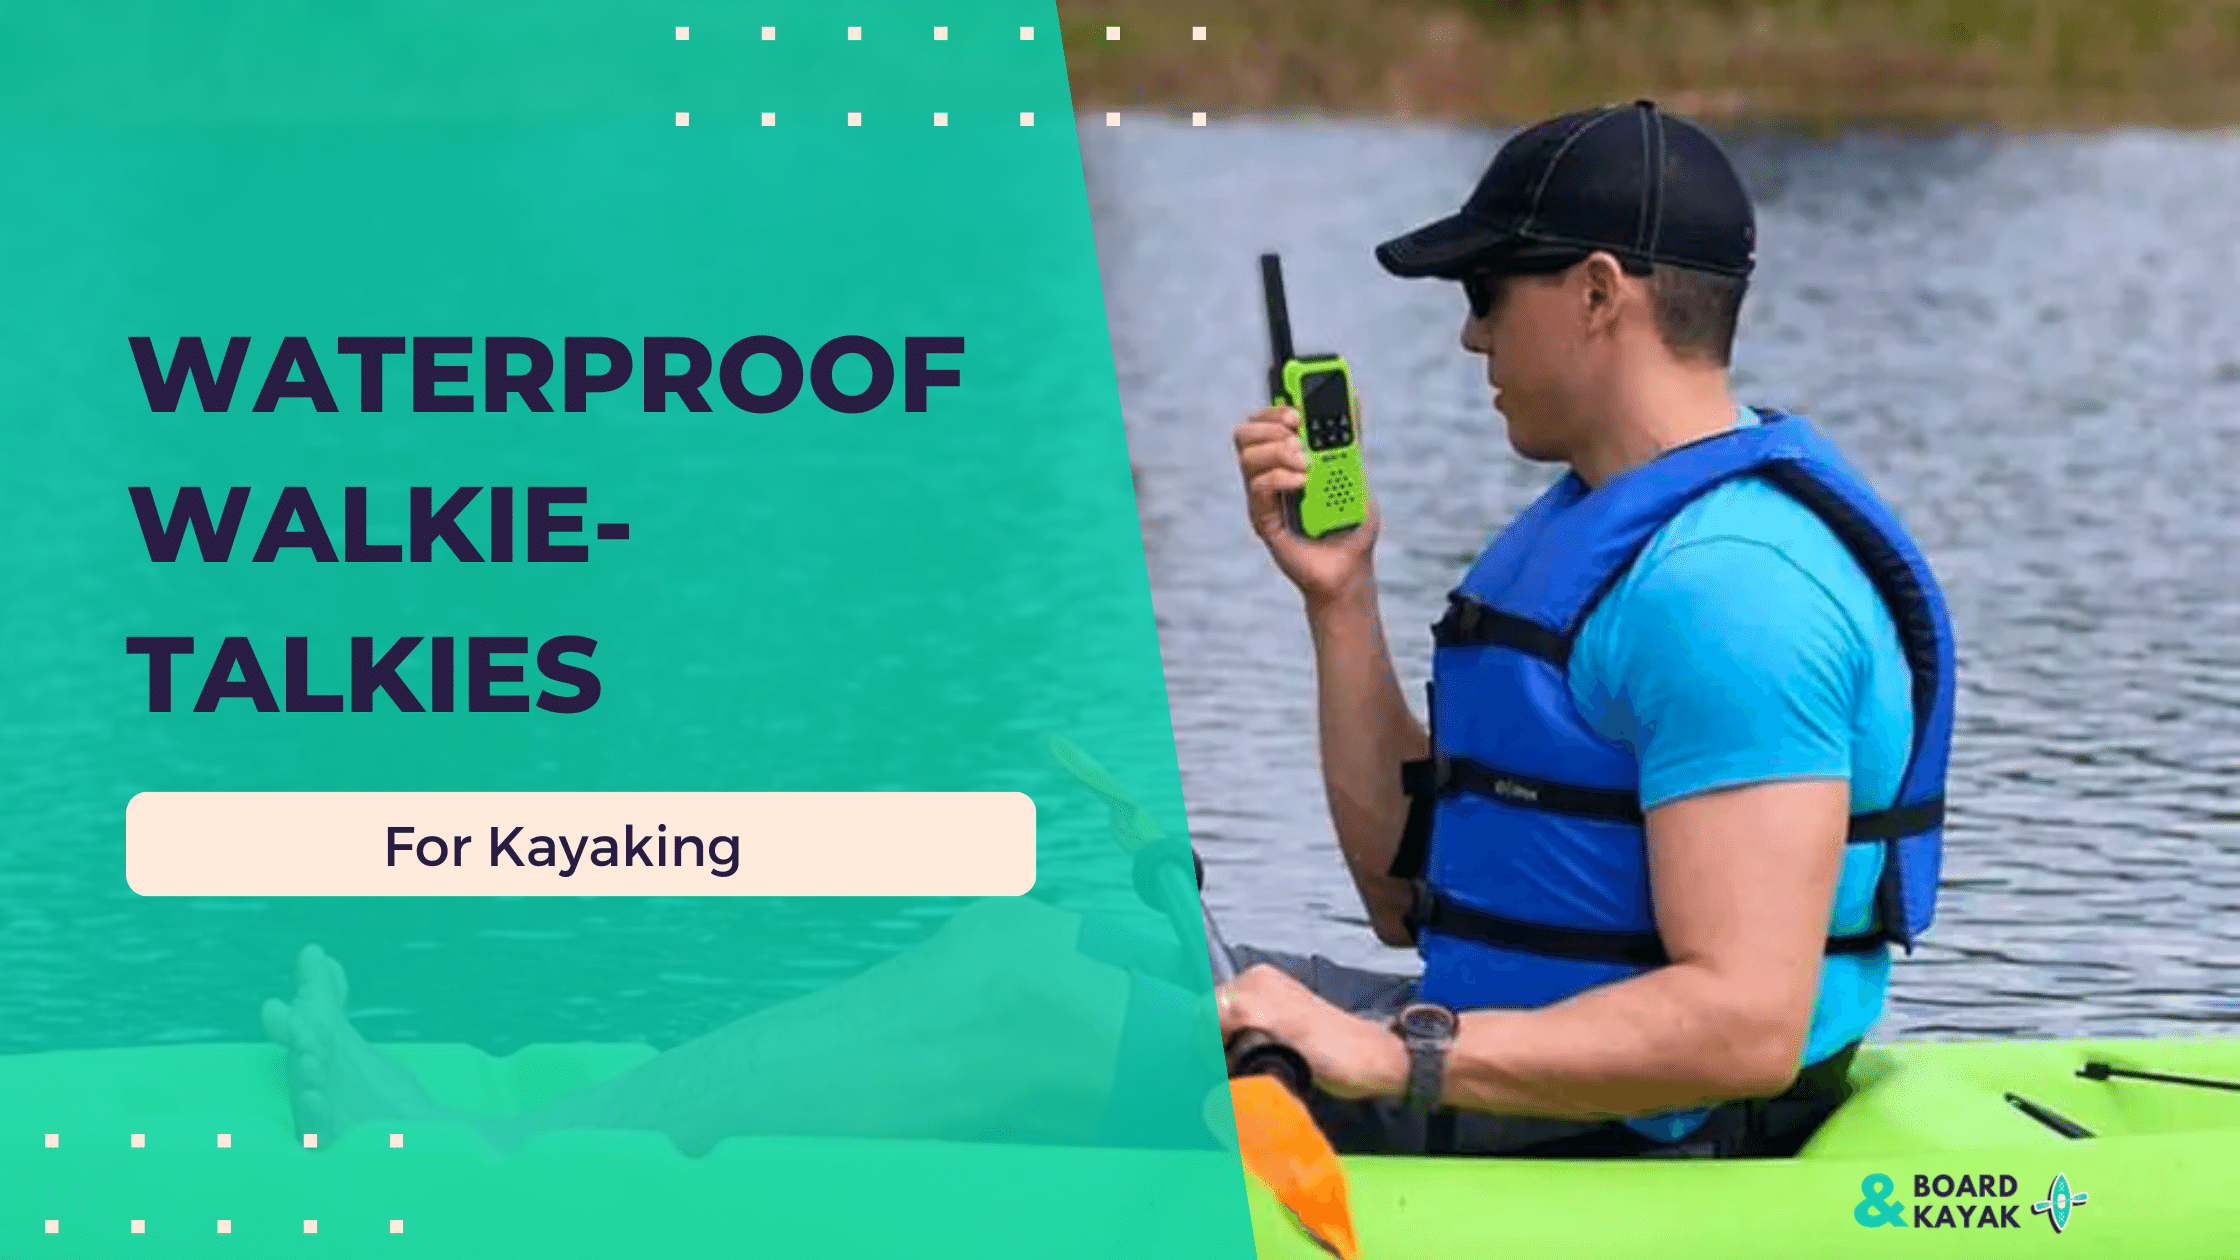 The Top Picks for Waterproof Walkie-Talkies for Kayaking